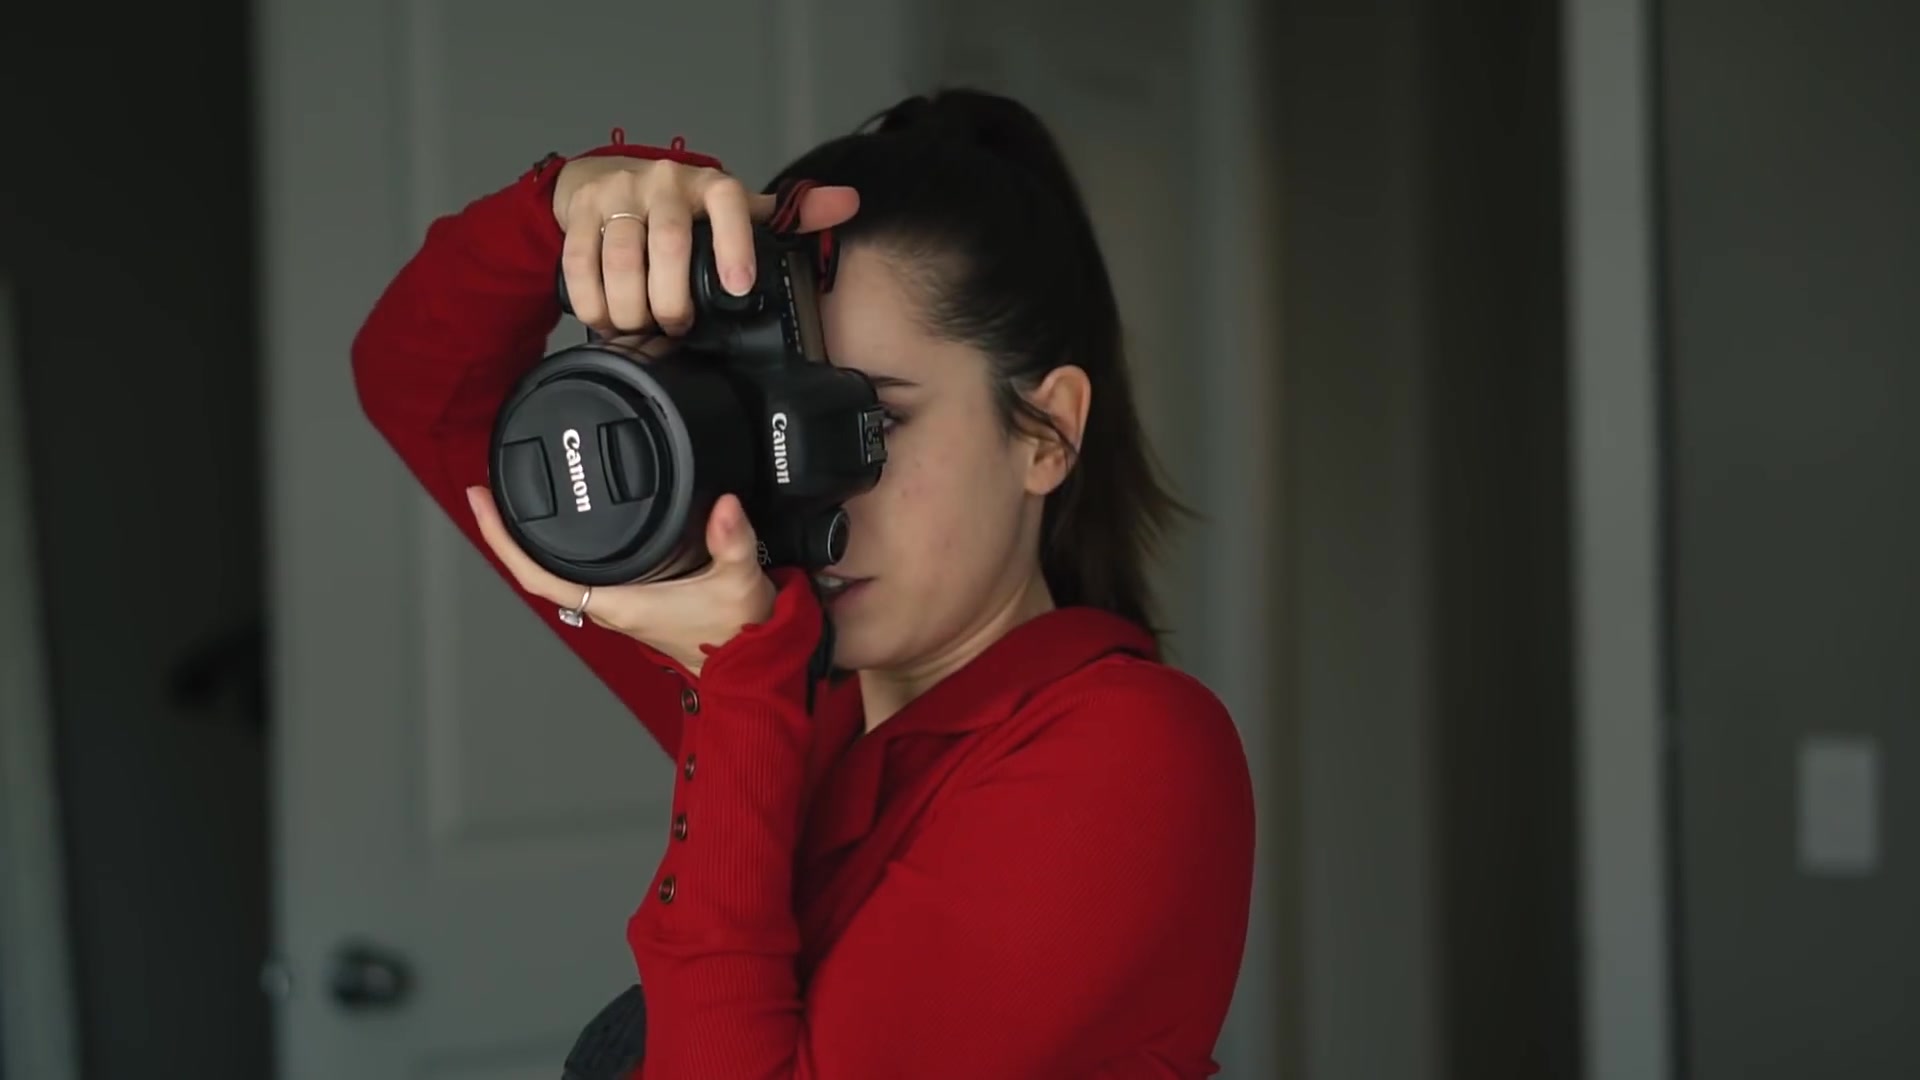 【摄影教程】正确的握持相机姿势 — 你真的会拿相机吗?